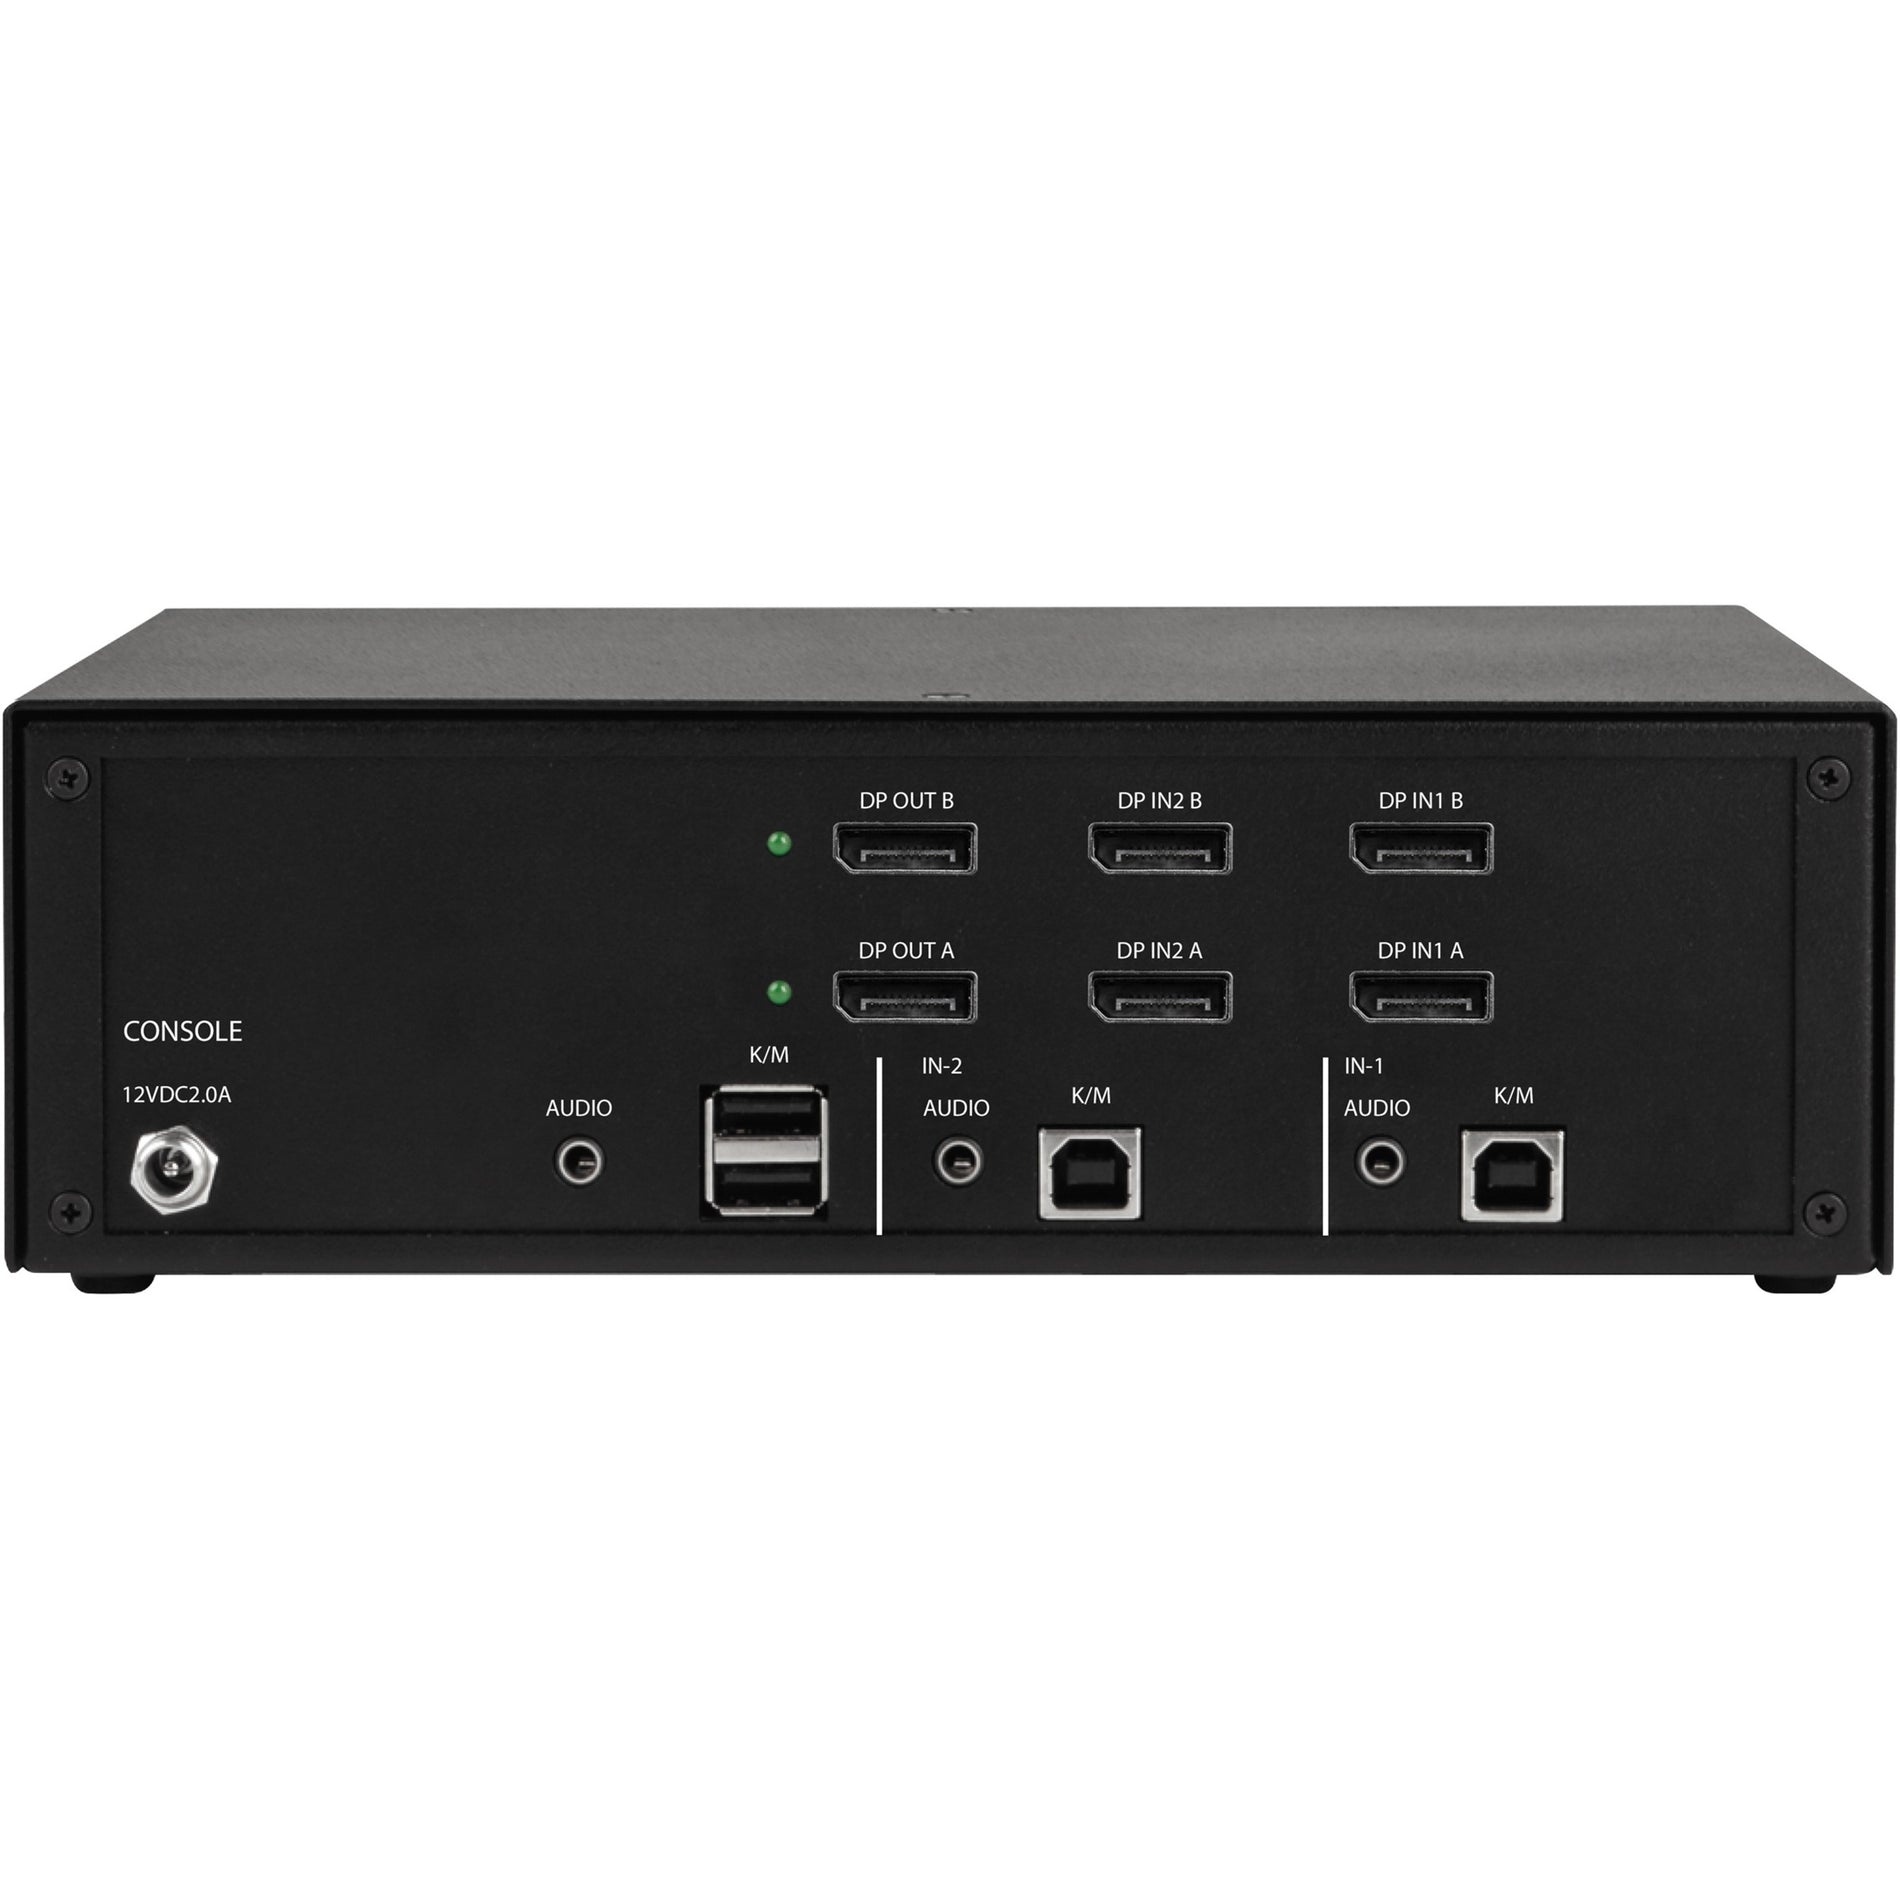 ブラックボックス KVS4-2002V セキュアKVMスイッチ - ディスプレイポート、4 USBポート、6ディスプレイポート、3840 x 2160解像度、1年保証